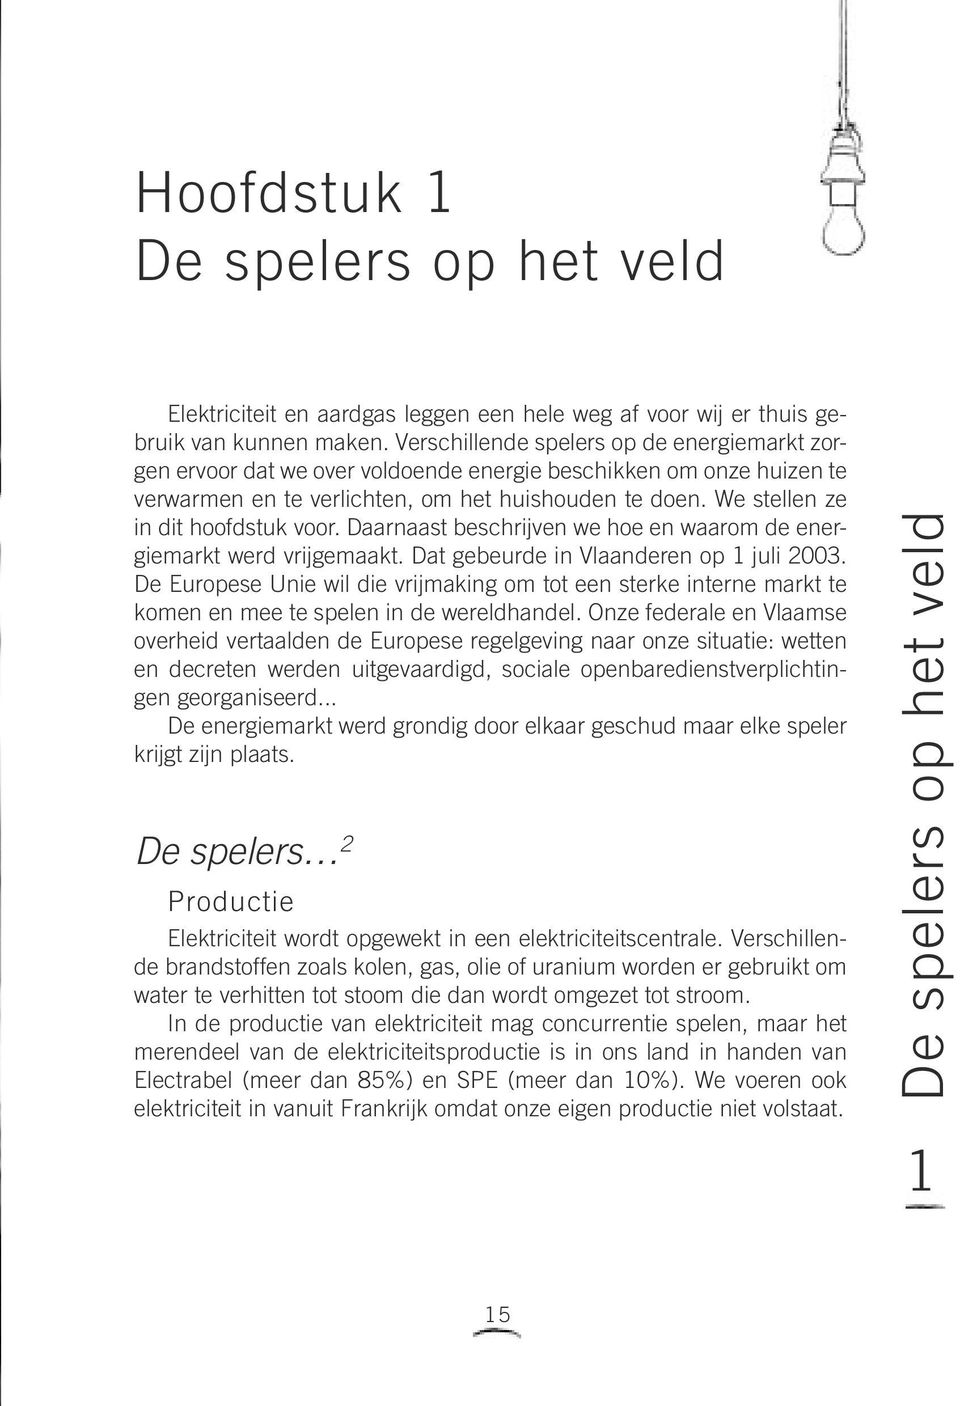 We stellen ze in dit hoofdstuk voor. Daarnaast beschrijven we hoe en waarom de energiemarkt werd vrijgemaakt. Dat gebeurde in Vlaanderen op 1 juli 2003.